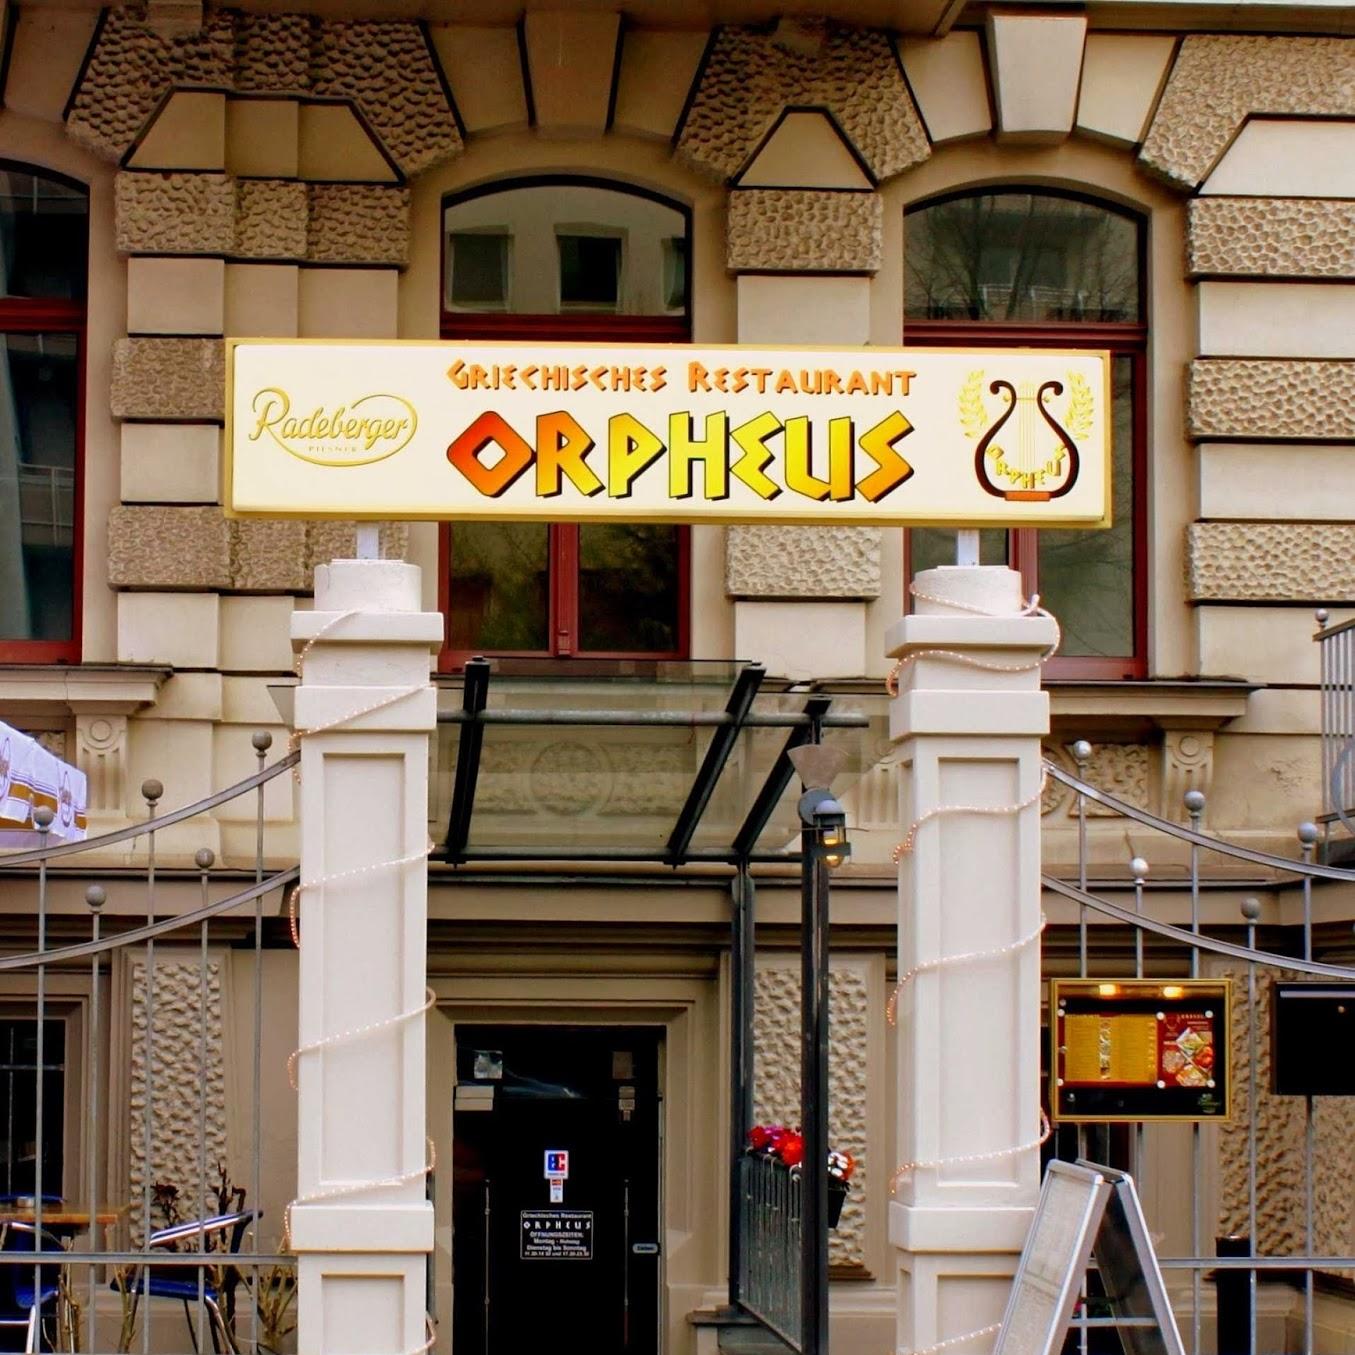 Restaurant "Orpheus" in Leipzig